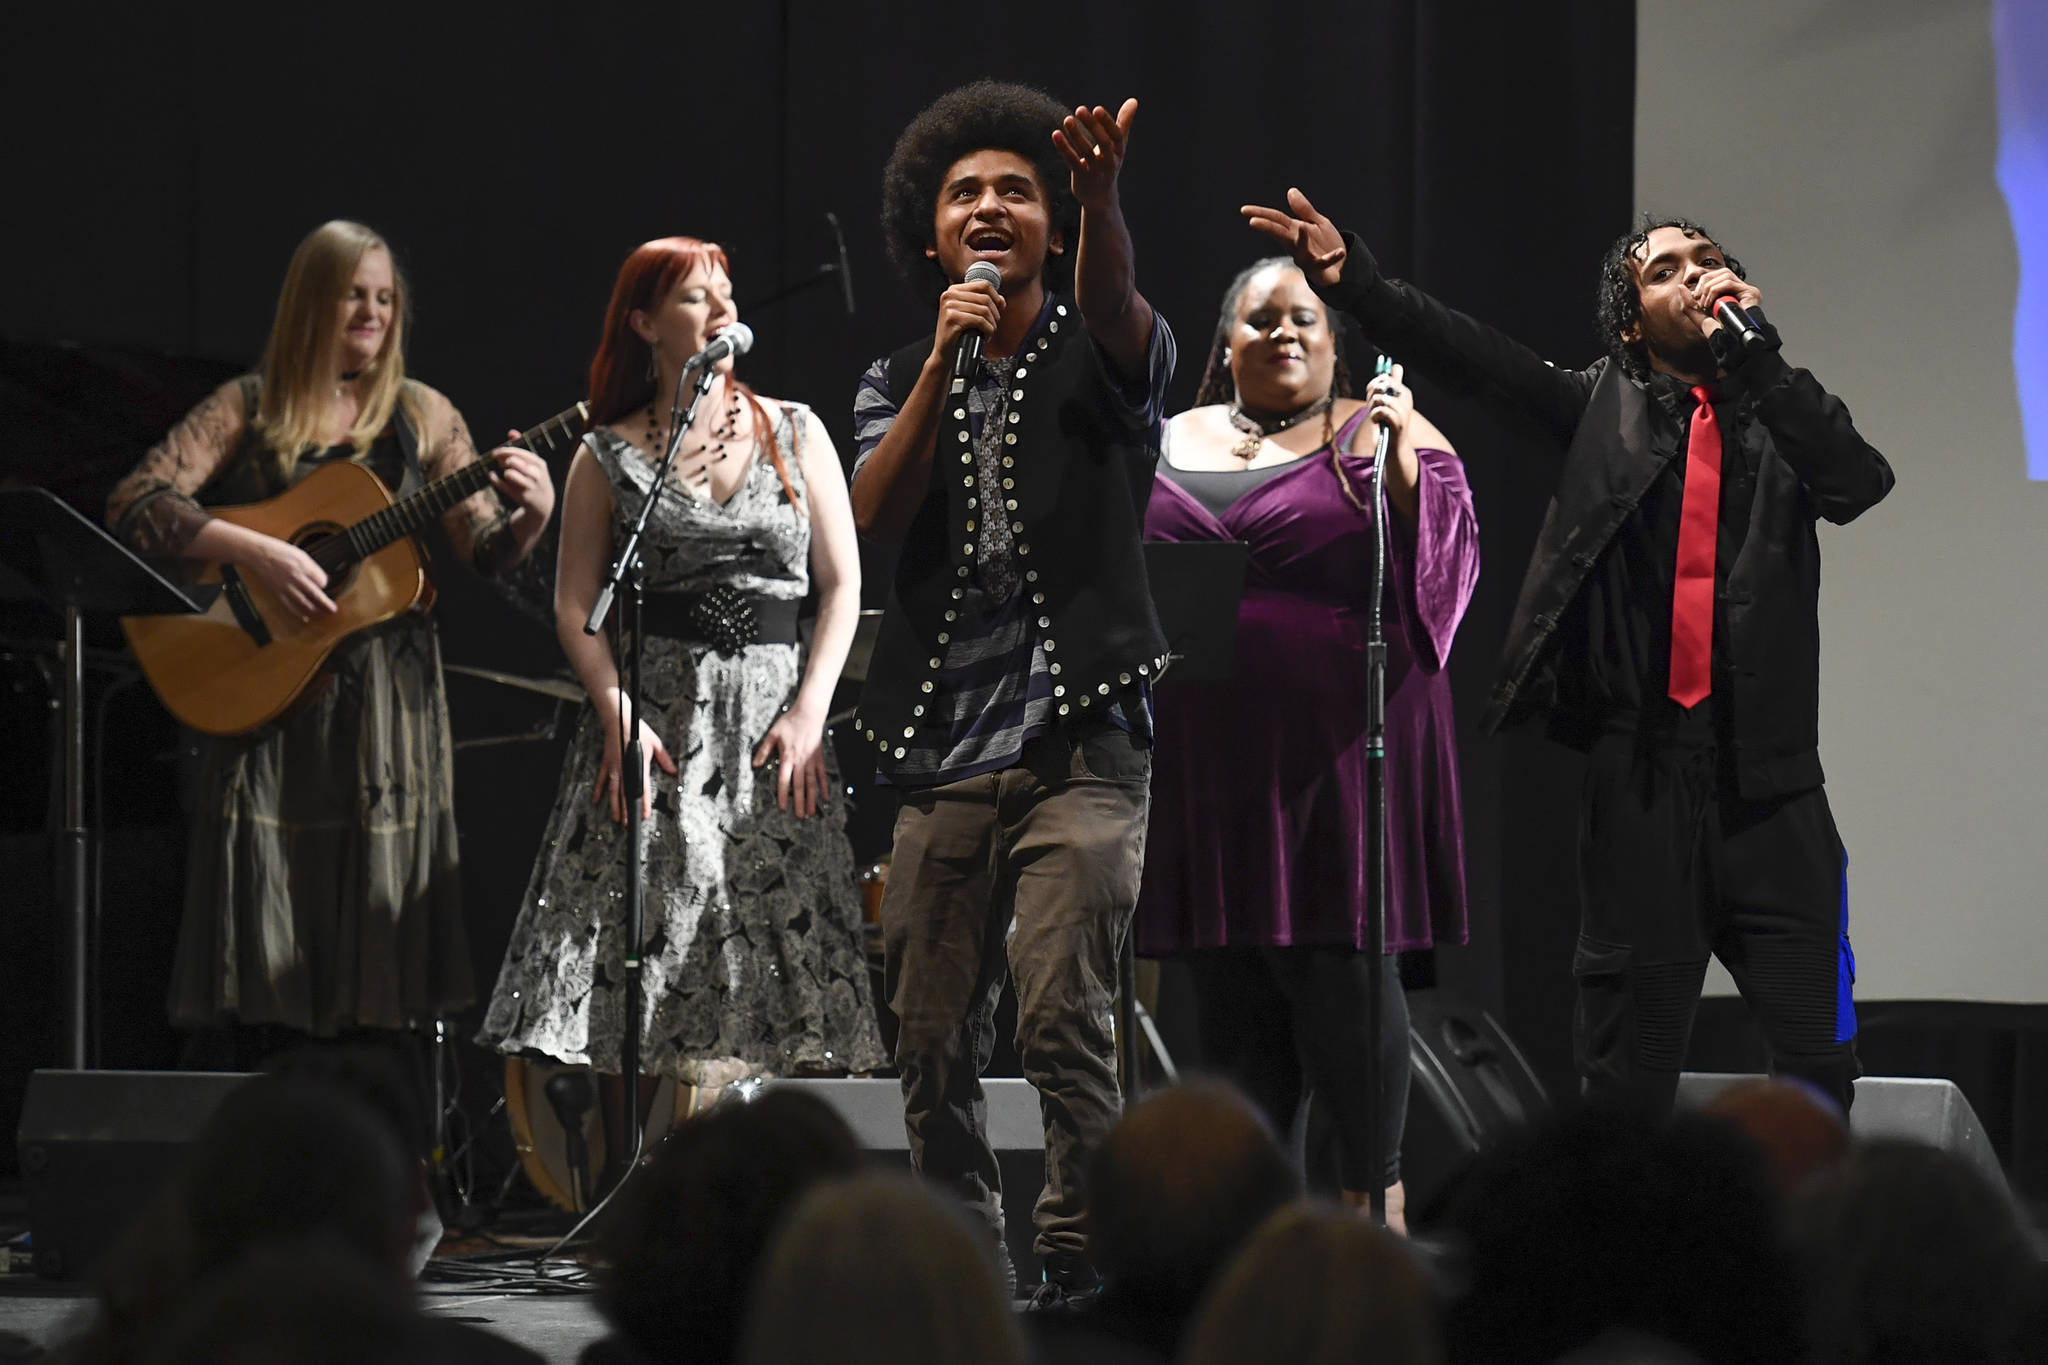 Young artist blends hip-hop and Tlingit heritage on big stage